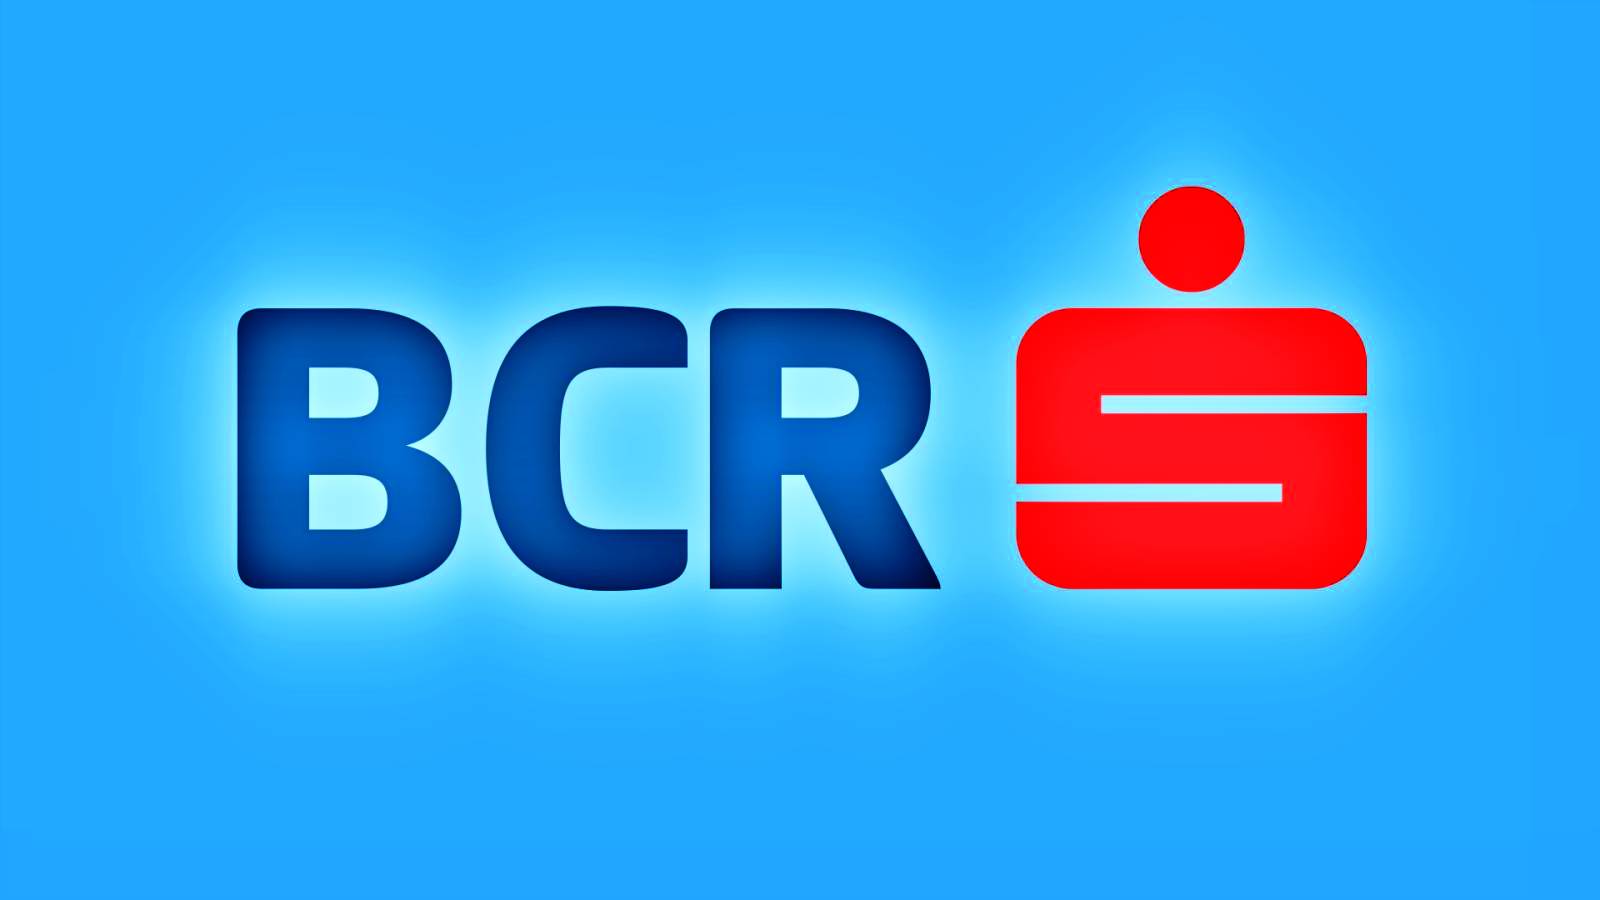 BCR Rumänien zahlt